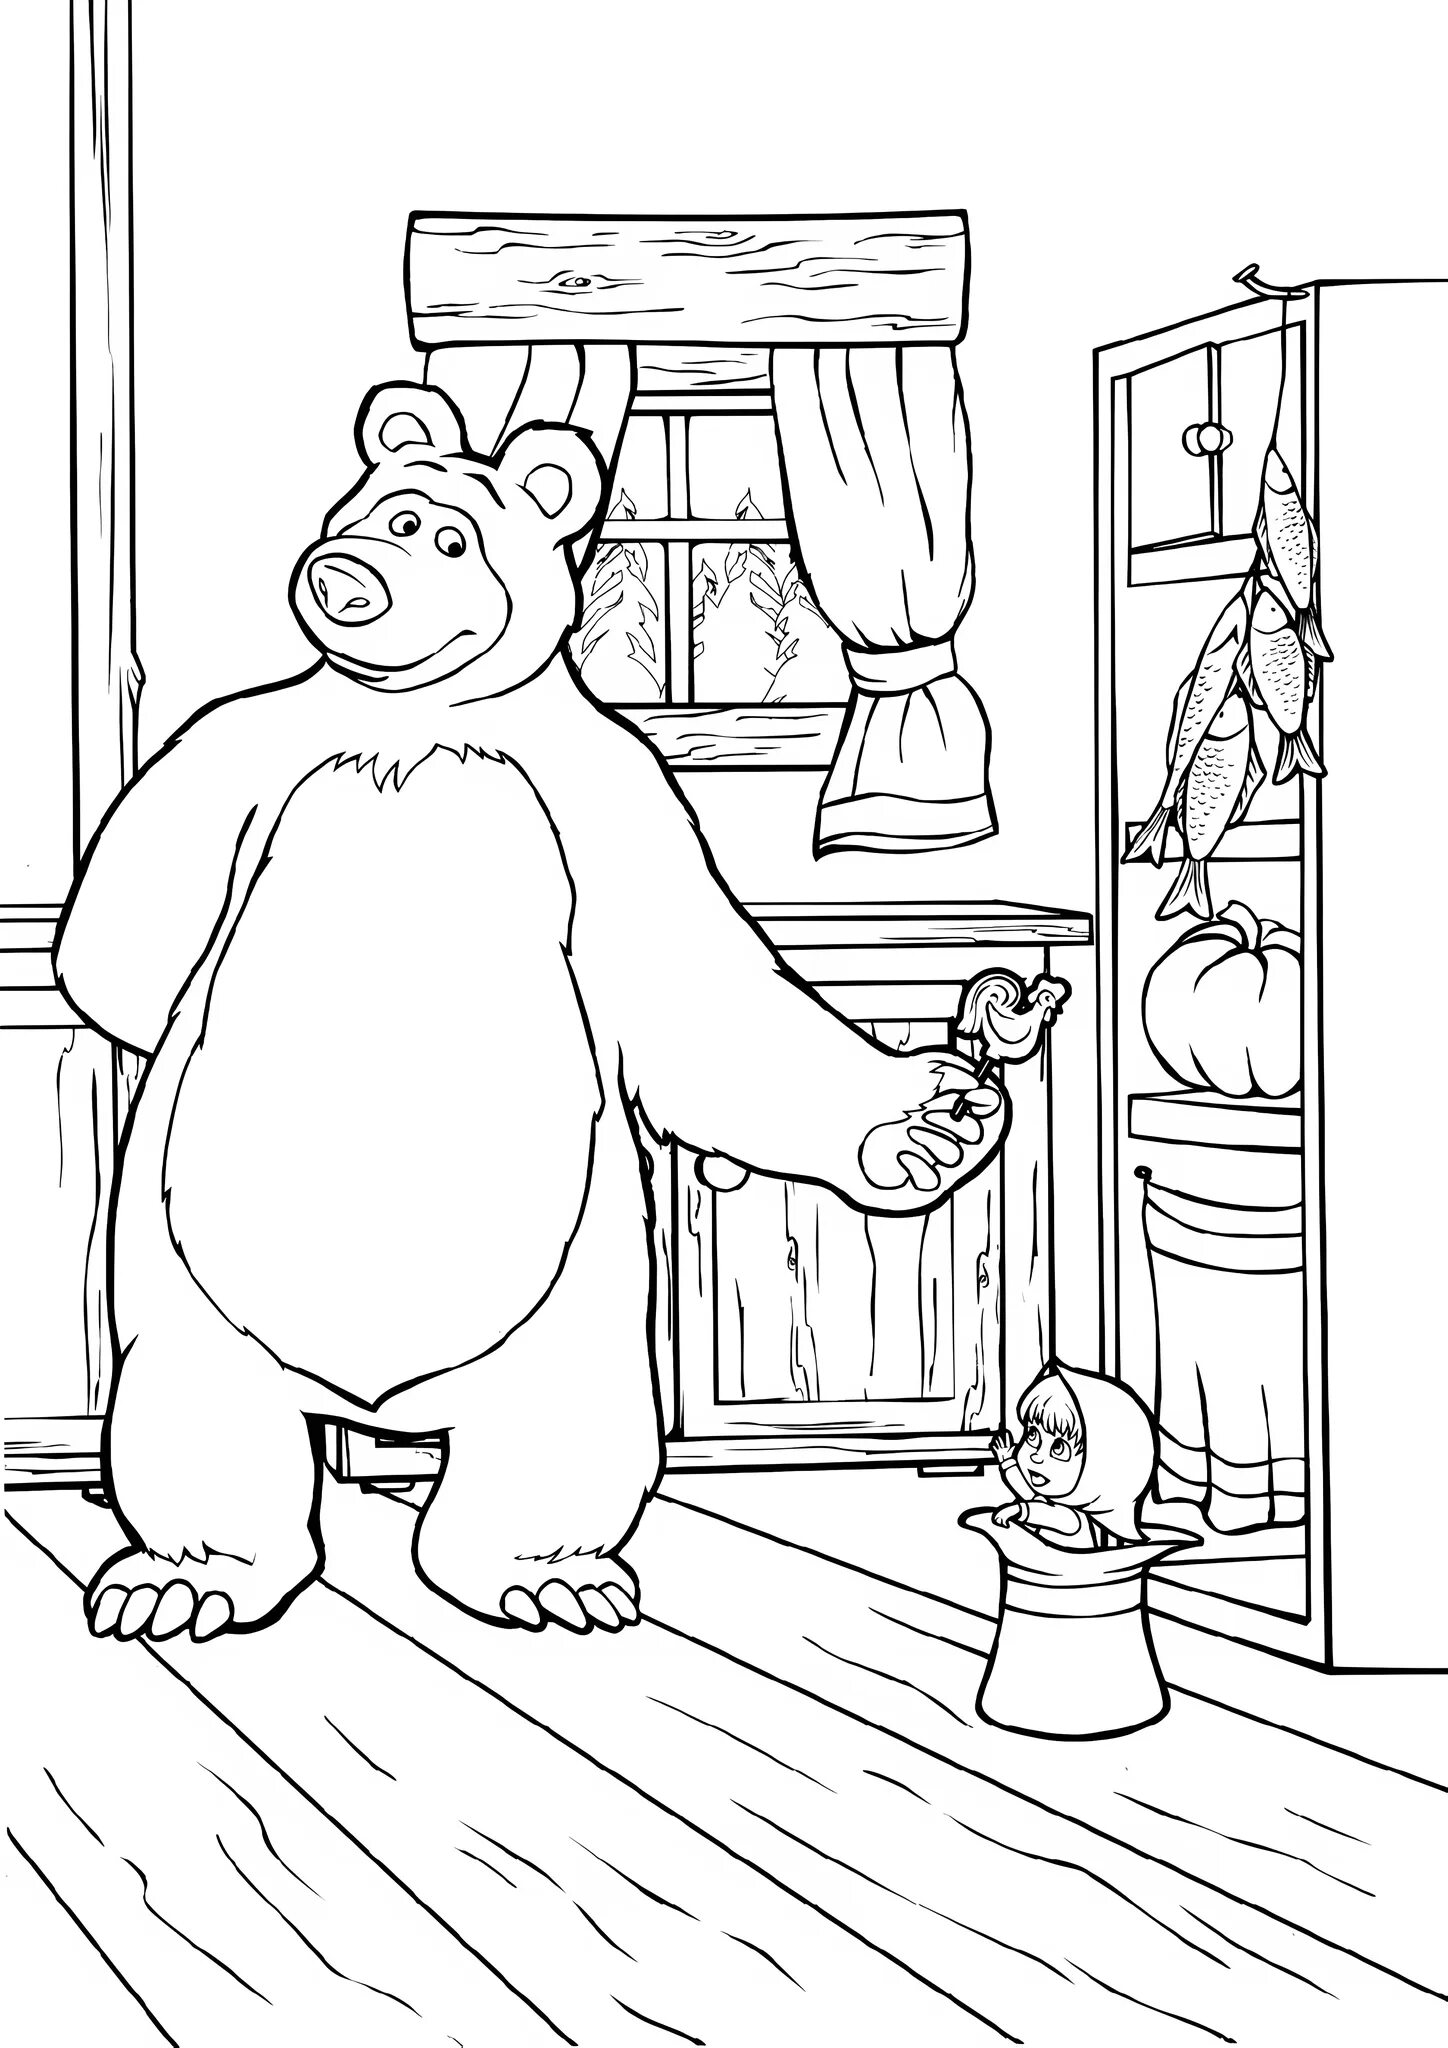 Маша и медведь печать. Раскраска. Маша и медведь. Маша и медведь расскраска. Медведь из мультфильма Маша и медведь раскраска. Раскраска Маши из мультфильма Маша и медведь.